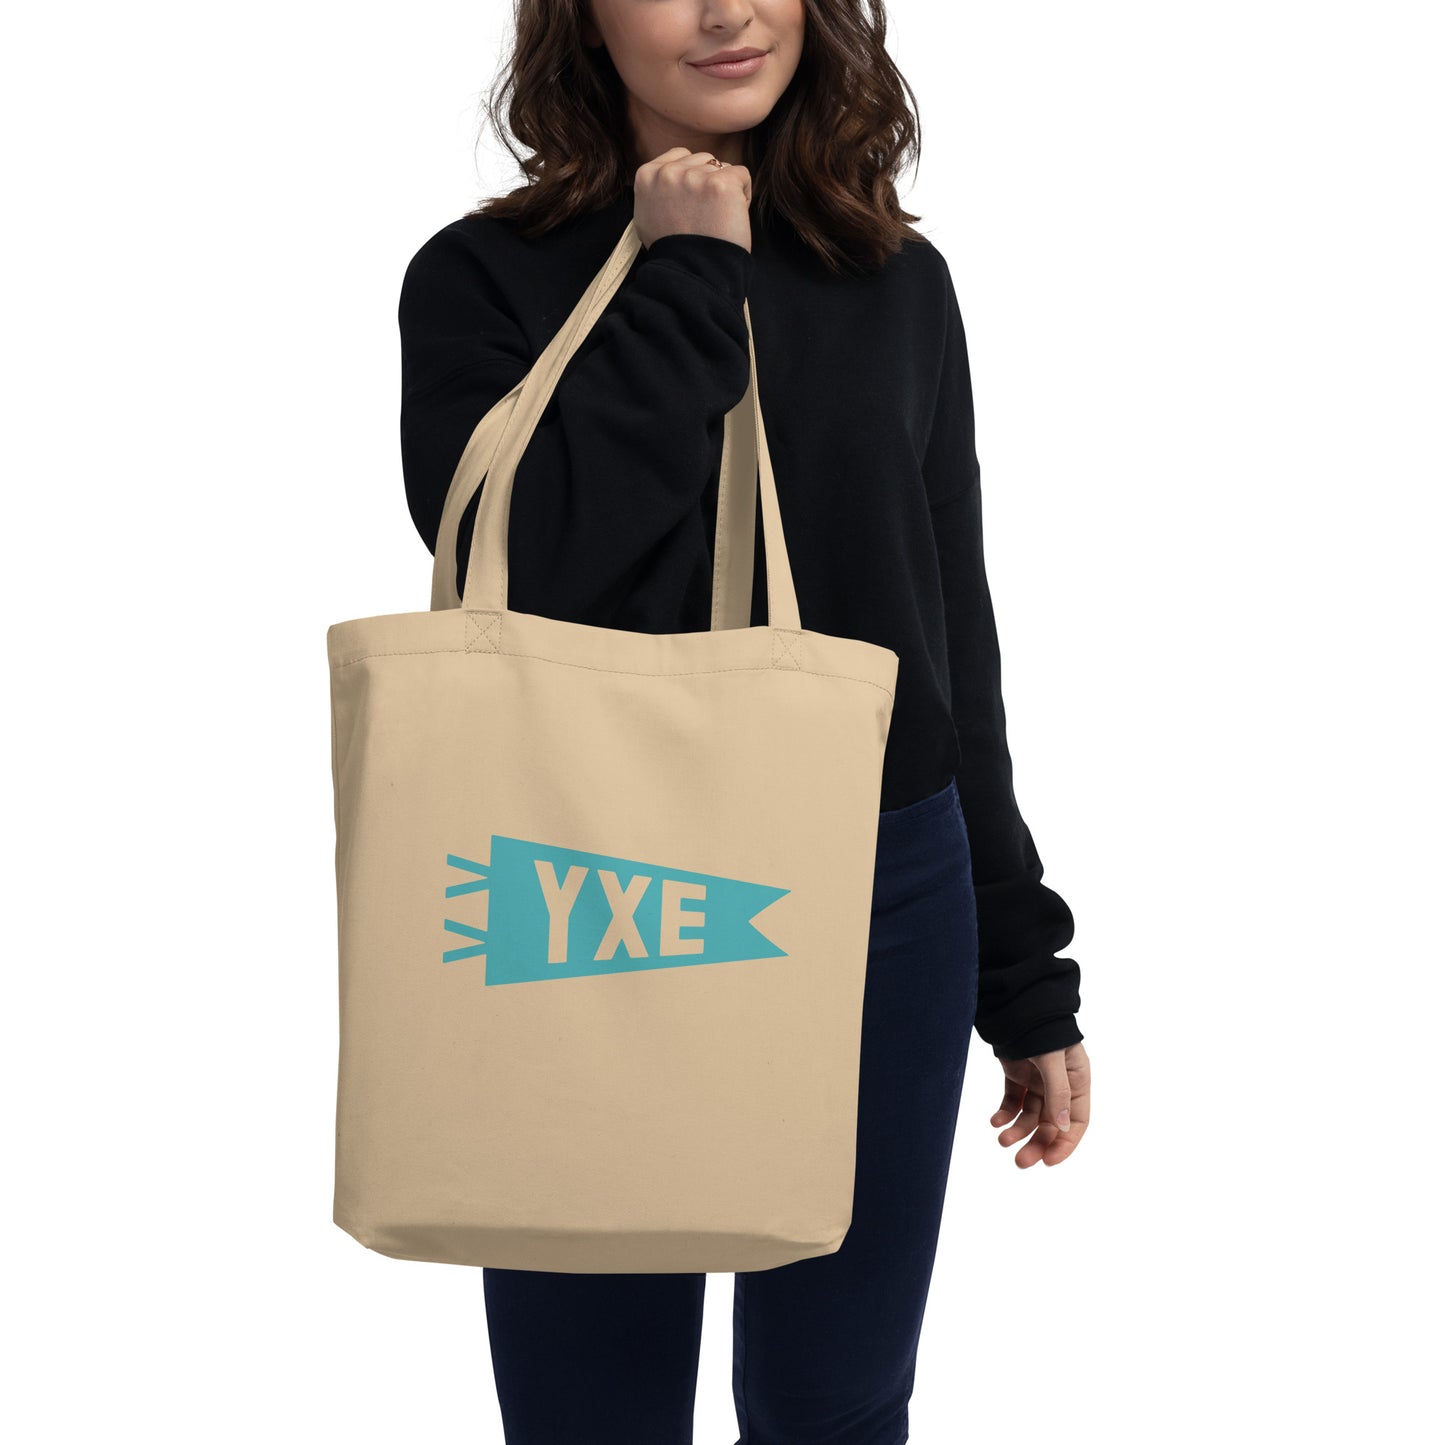 Cool Travel Gift Organic Tote Bag - Viking Blue • YXE Saskatoon • YHM Designs - Image 03